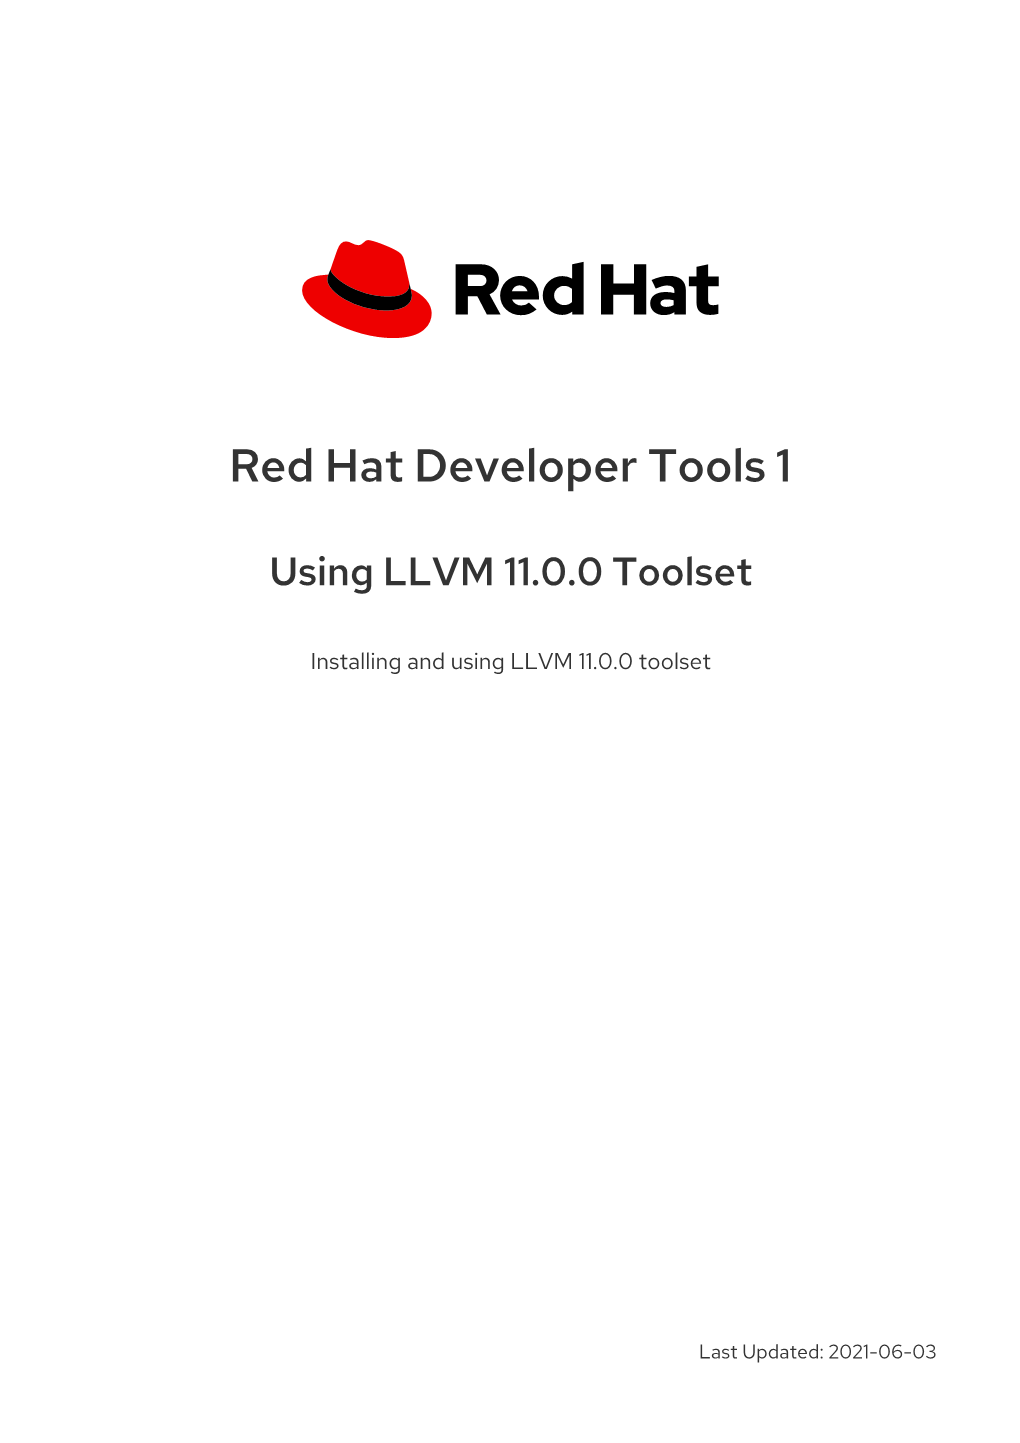 Red Hat Developer Tools 1 Using LLVM 11.0.0 Toolset